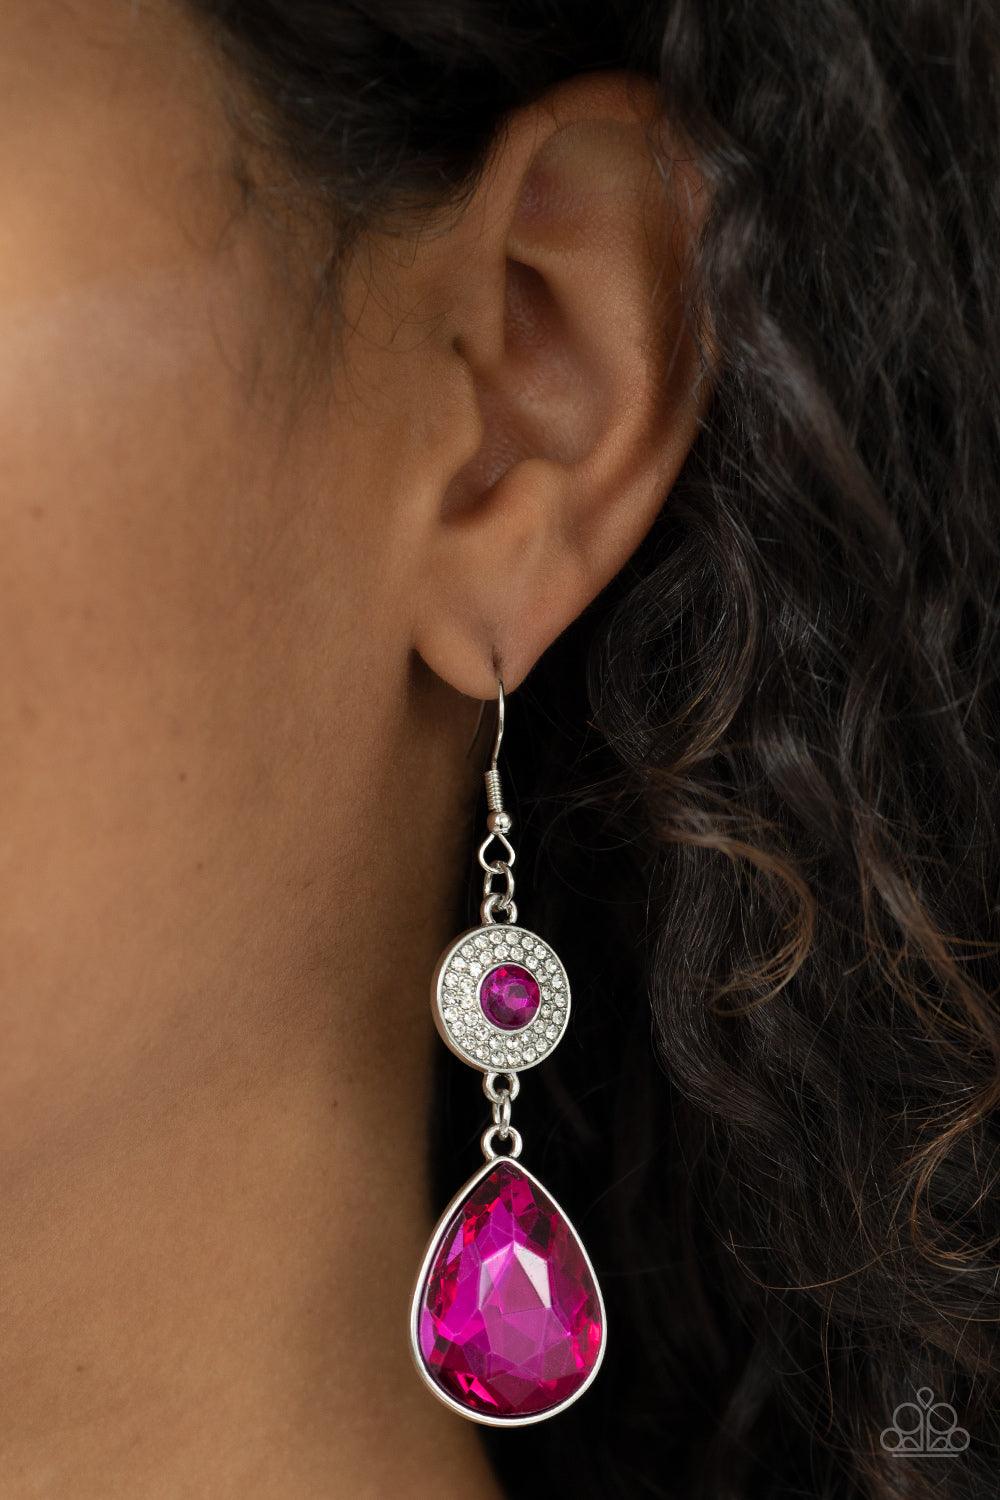 Reflective Rhinestones Pink Earrings - Jewelry by Bretta